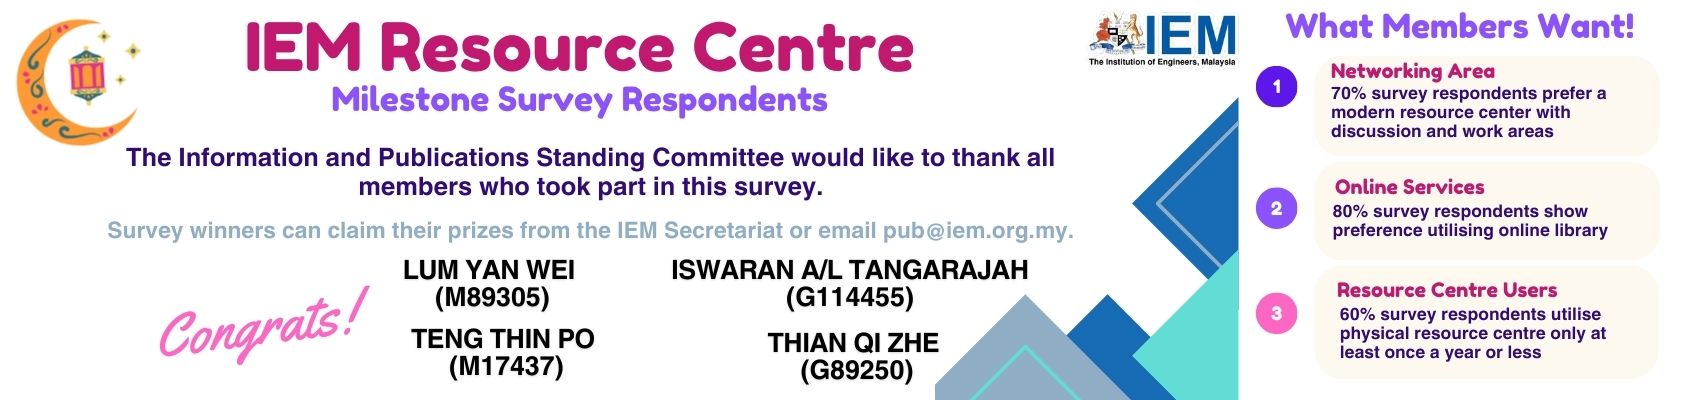 IEM Resource Centre Survey Result